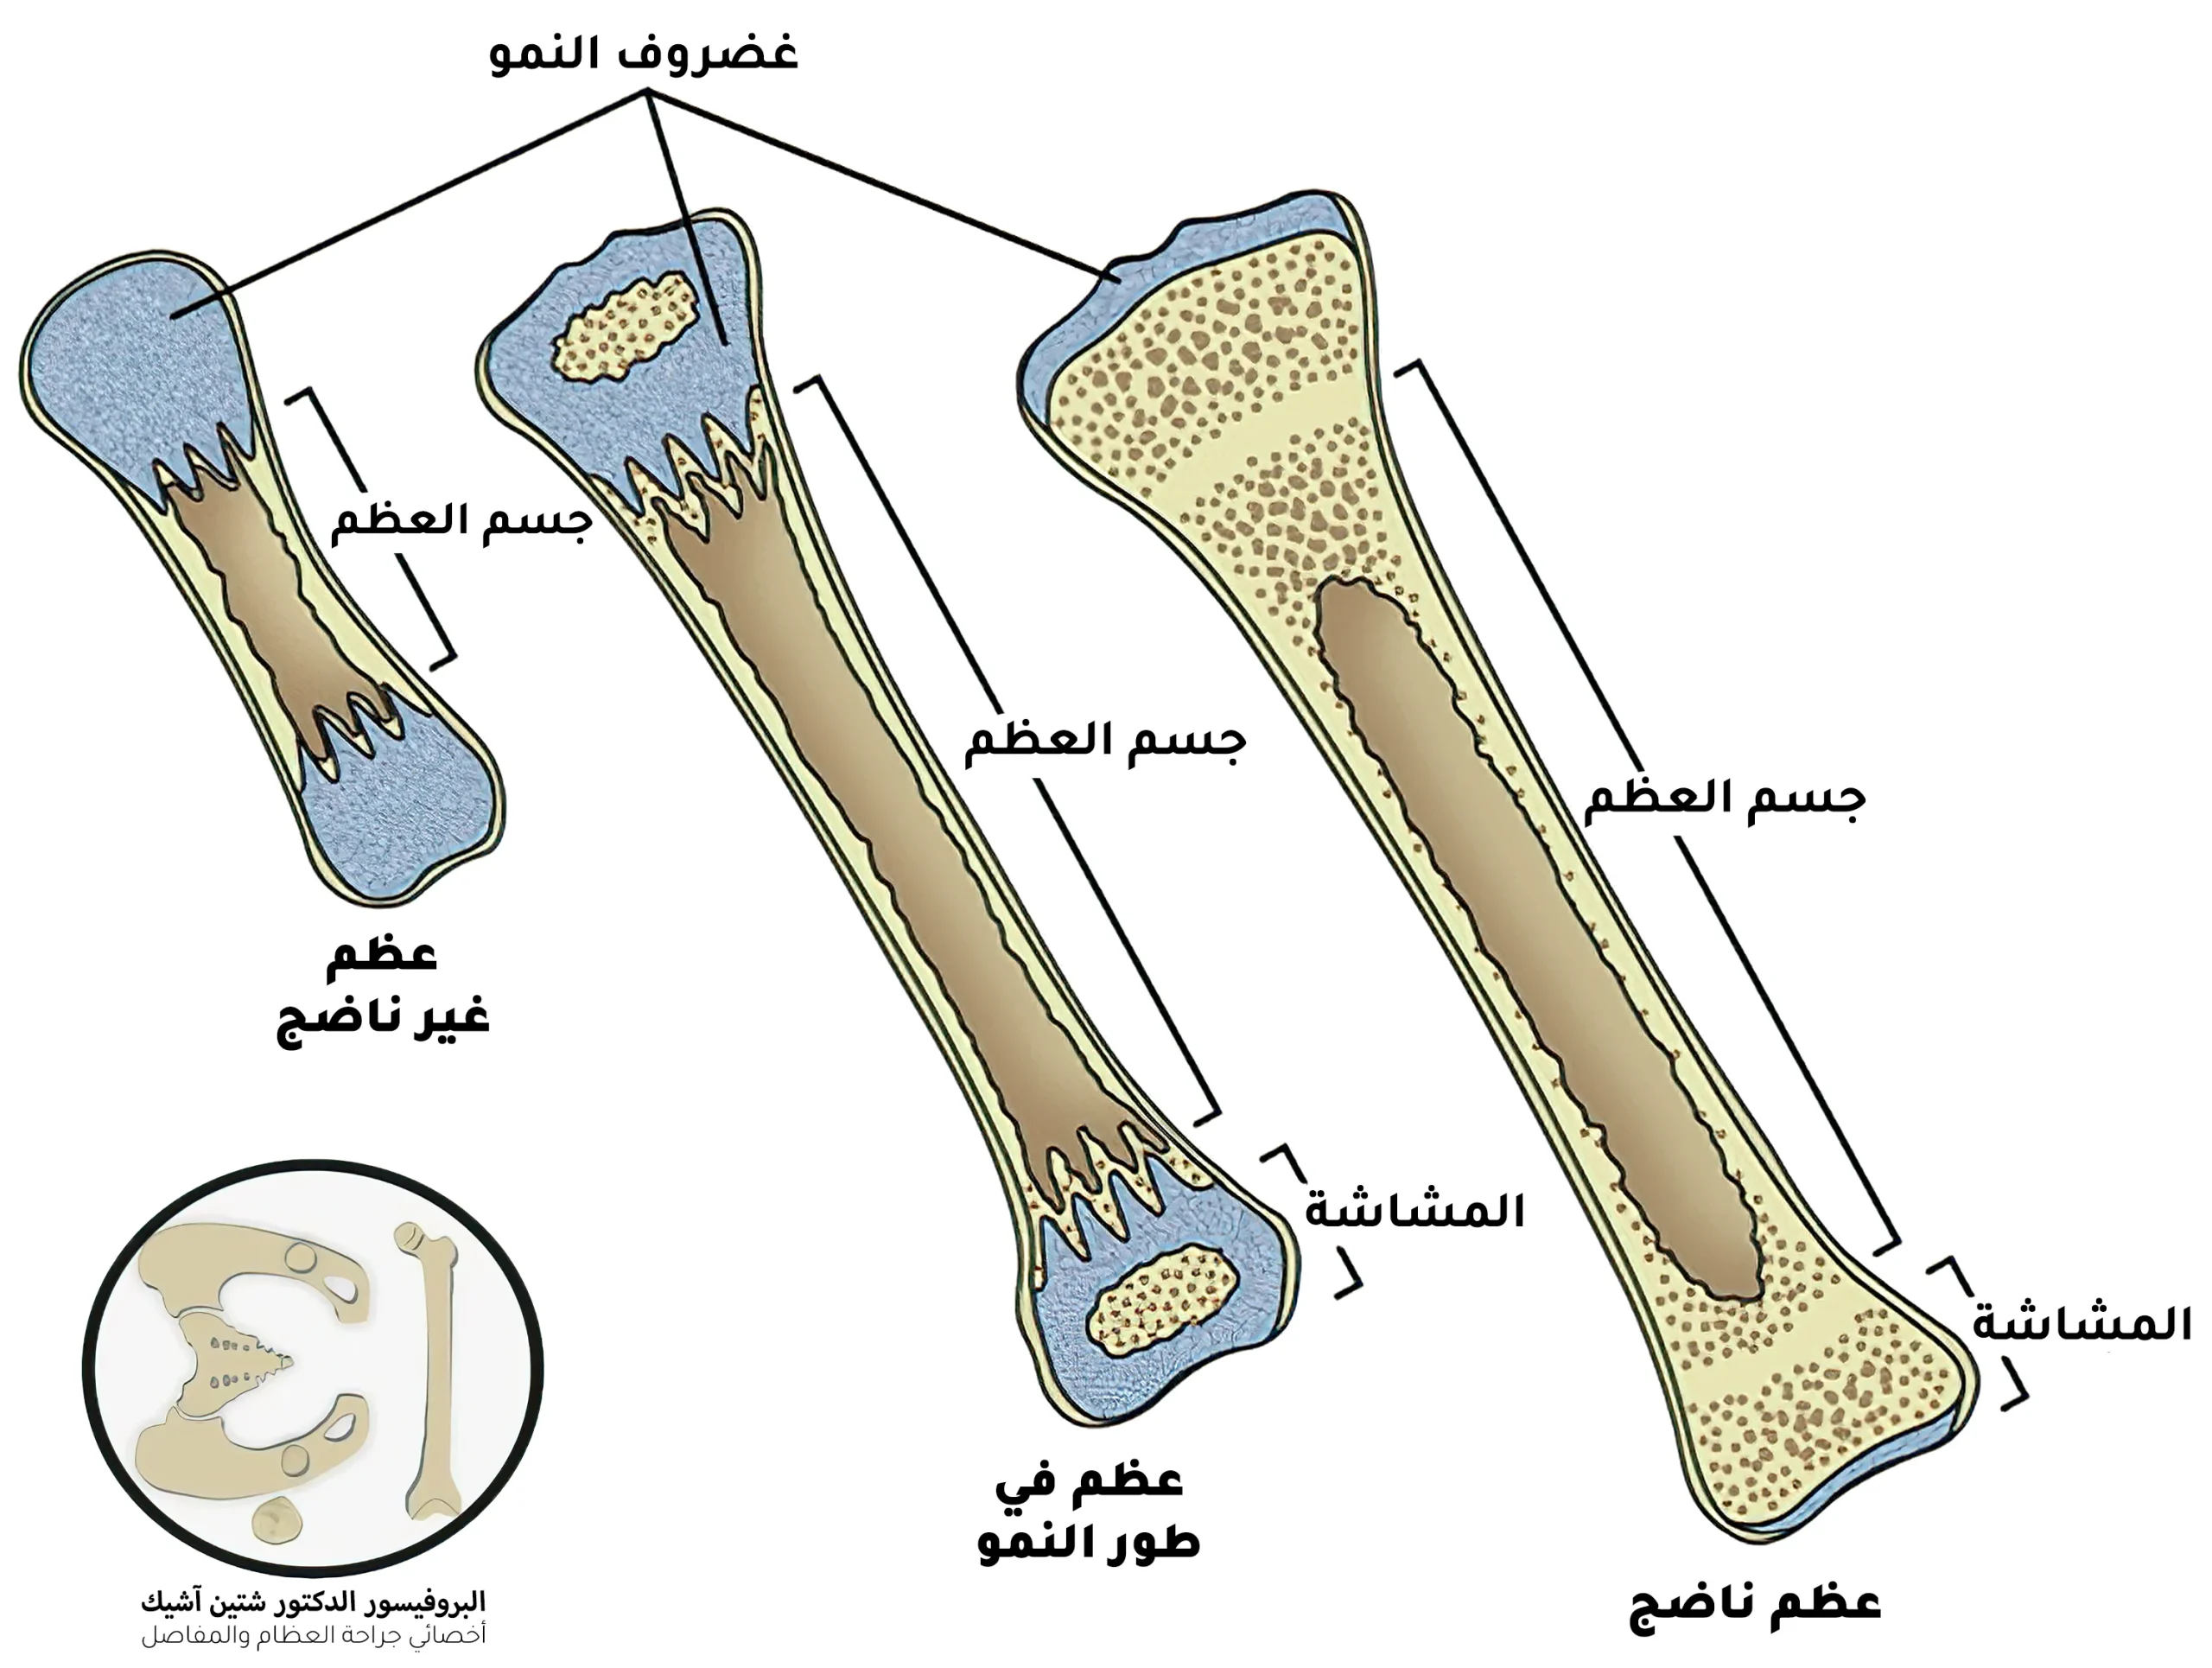 يمكن تصنيف أنواع العظام من حيث التركيب إلى عظم أولي غير ناضج في المرحلة الجنينية يستبدل بعظم الثانوي ثانوي ناضج عند البلوغ